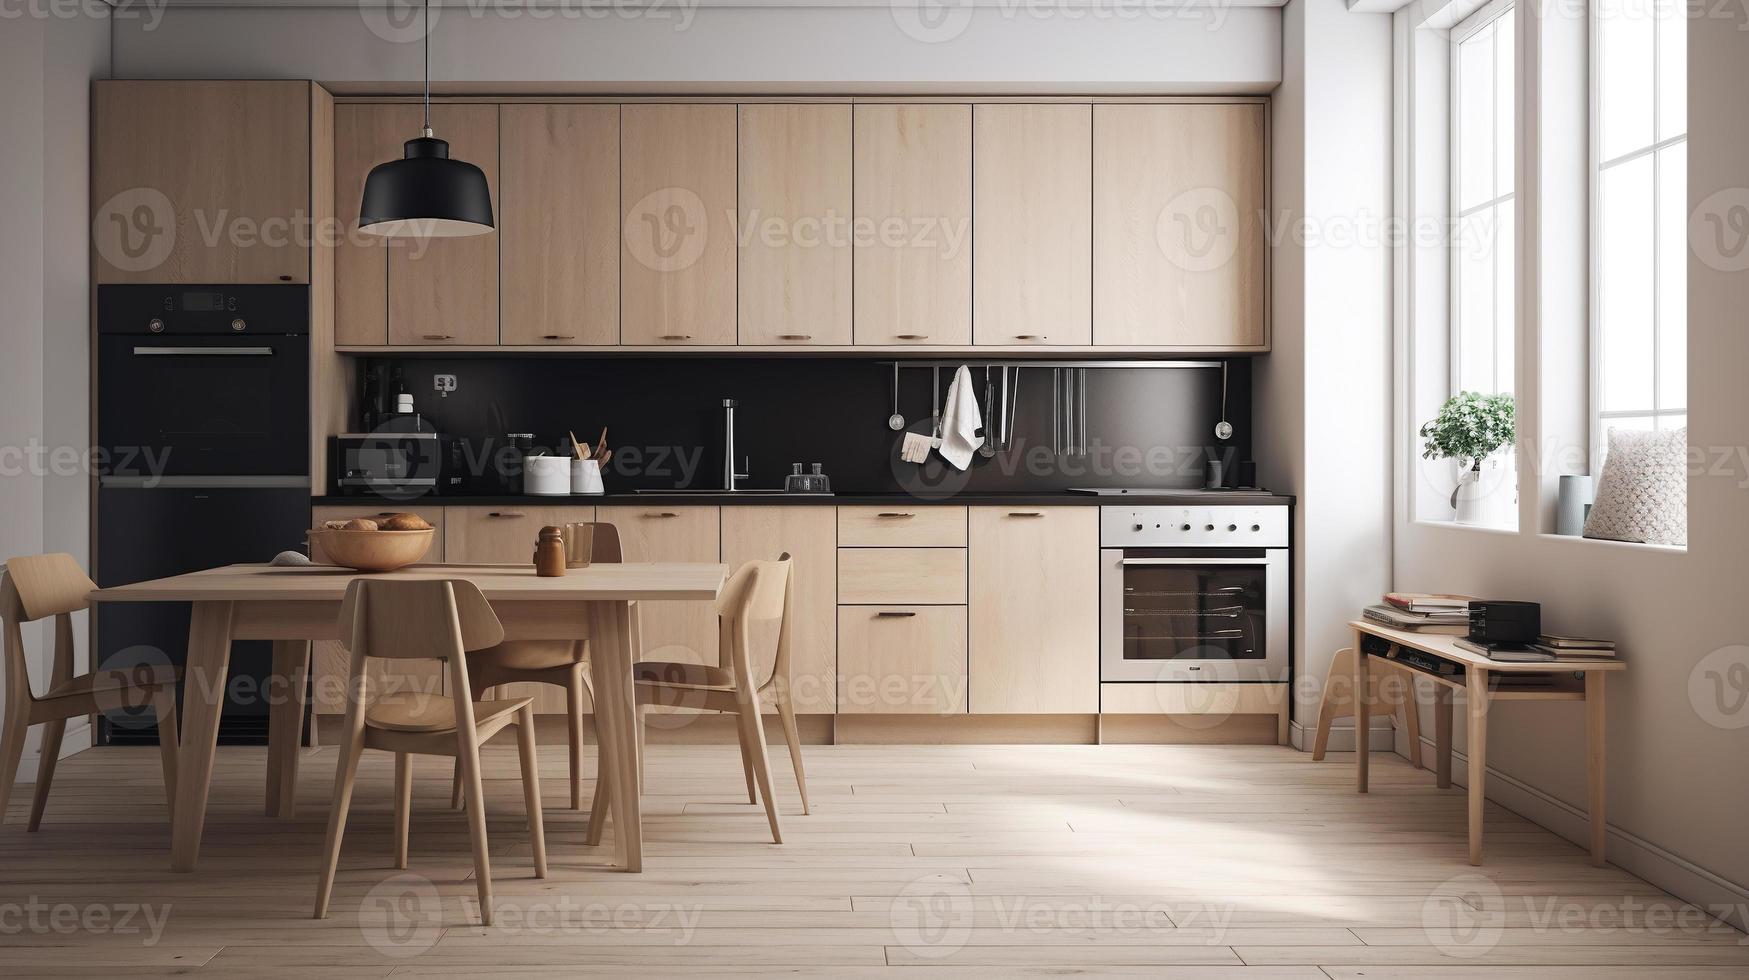 sencillo minimalista moderno cocina acogedor cómodo y elegante para casa y departamento, gabinete, cocina hundir, y algunos cocina accesorios, comedor habitación, bueno interior. foto